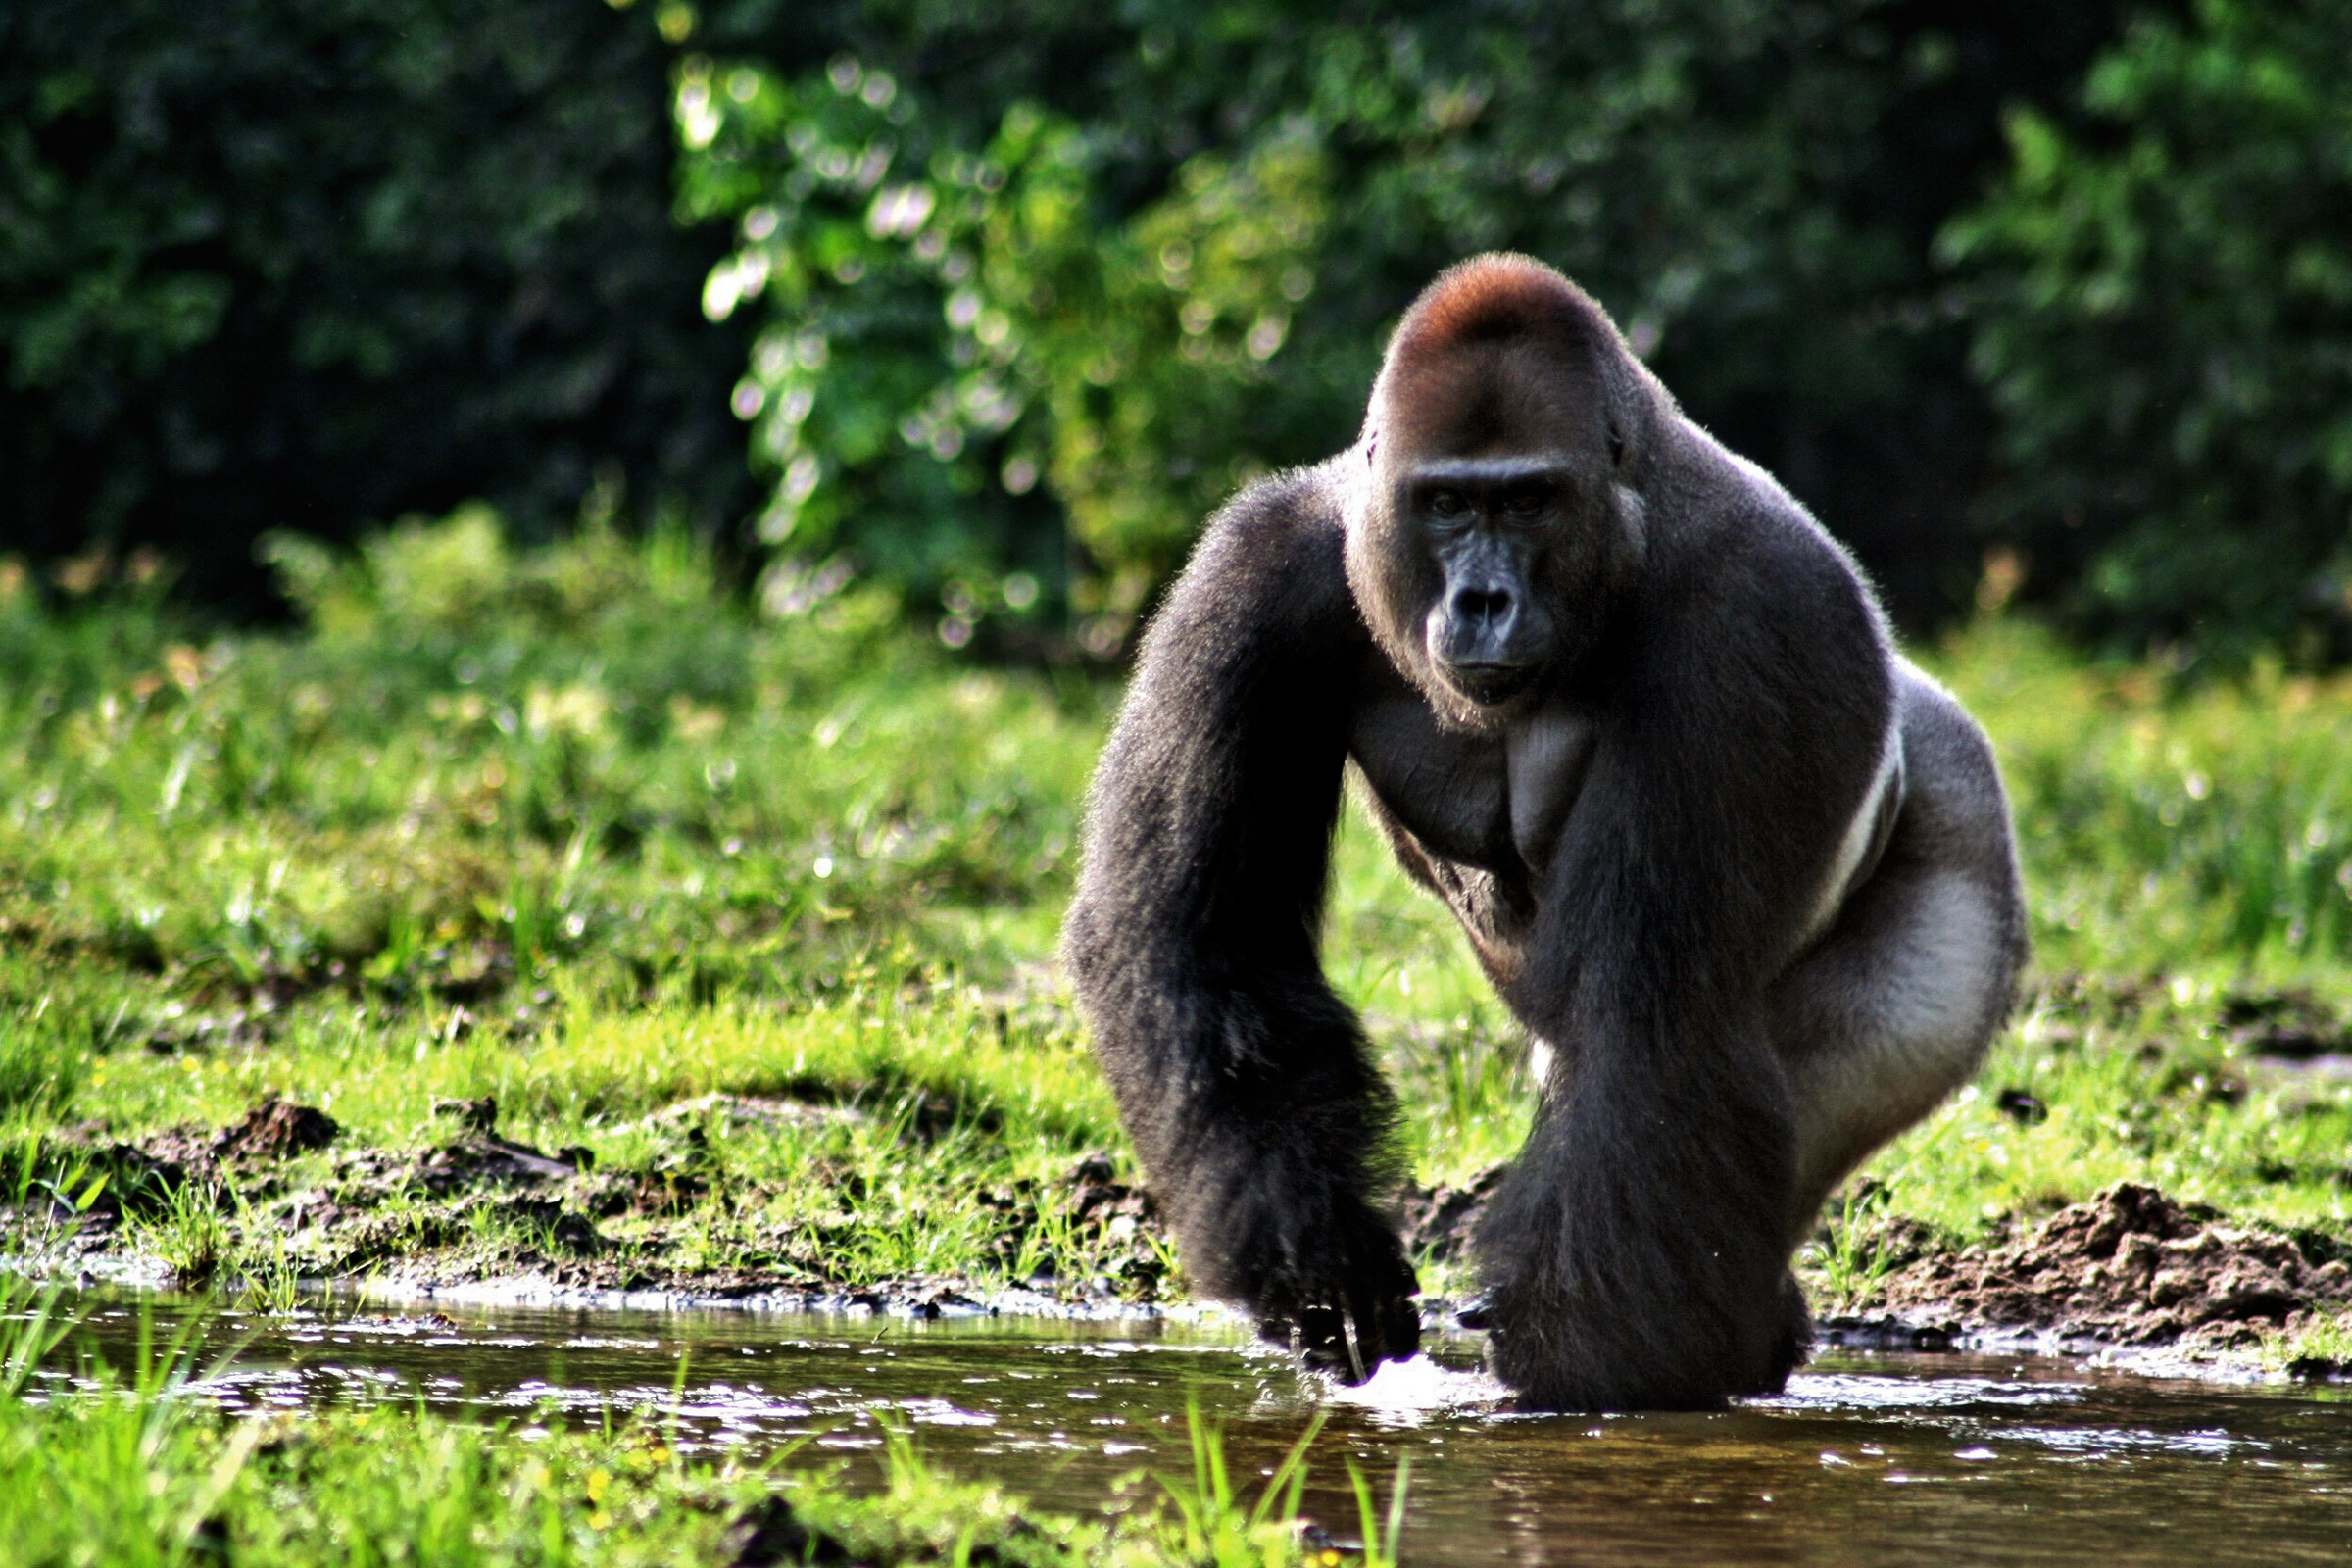 Gorilla portrait, Intense gaze, Stunning background, High definition, 2400x1600 HD Desktop